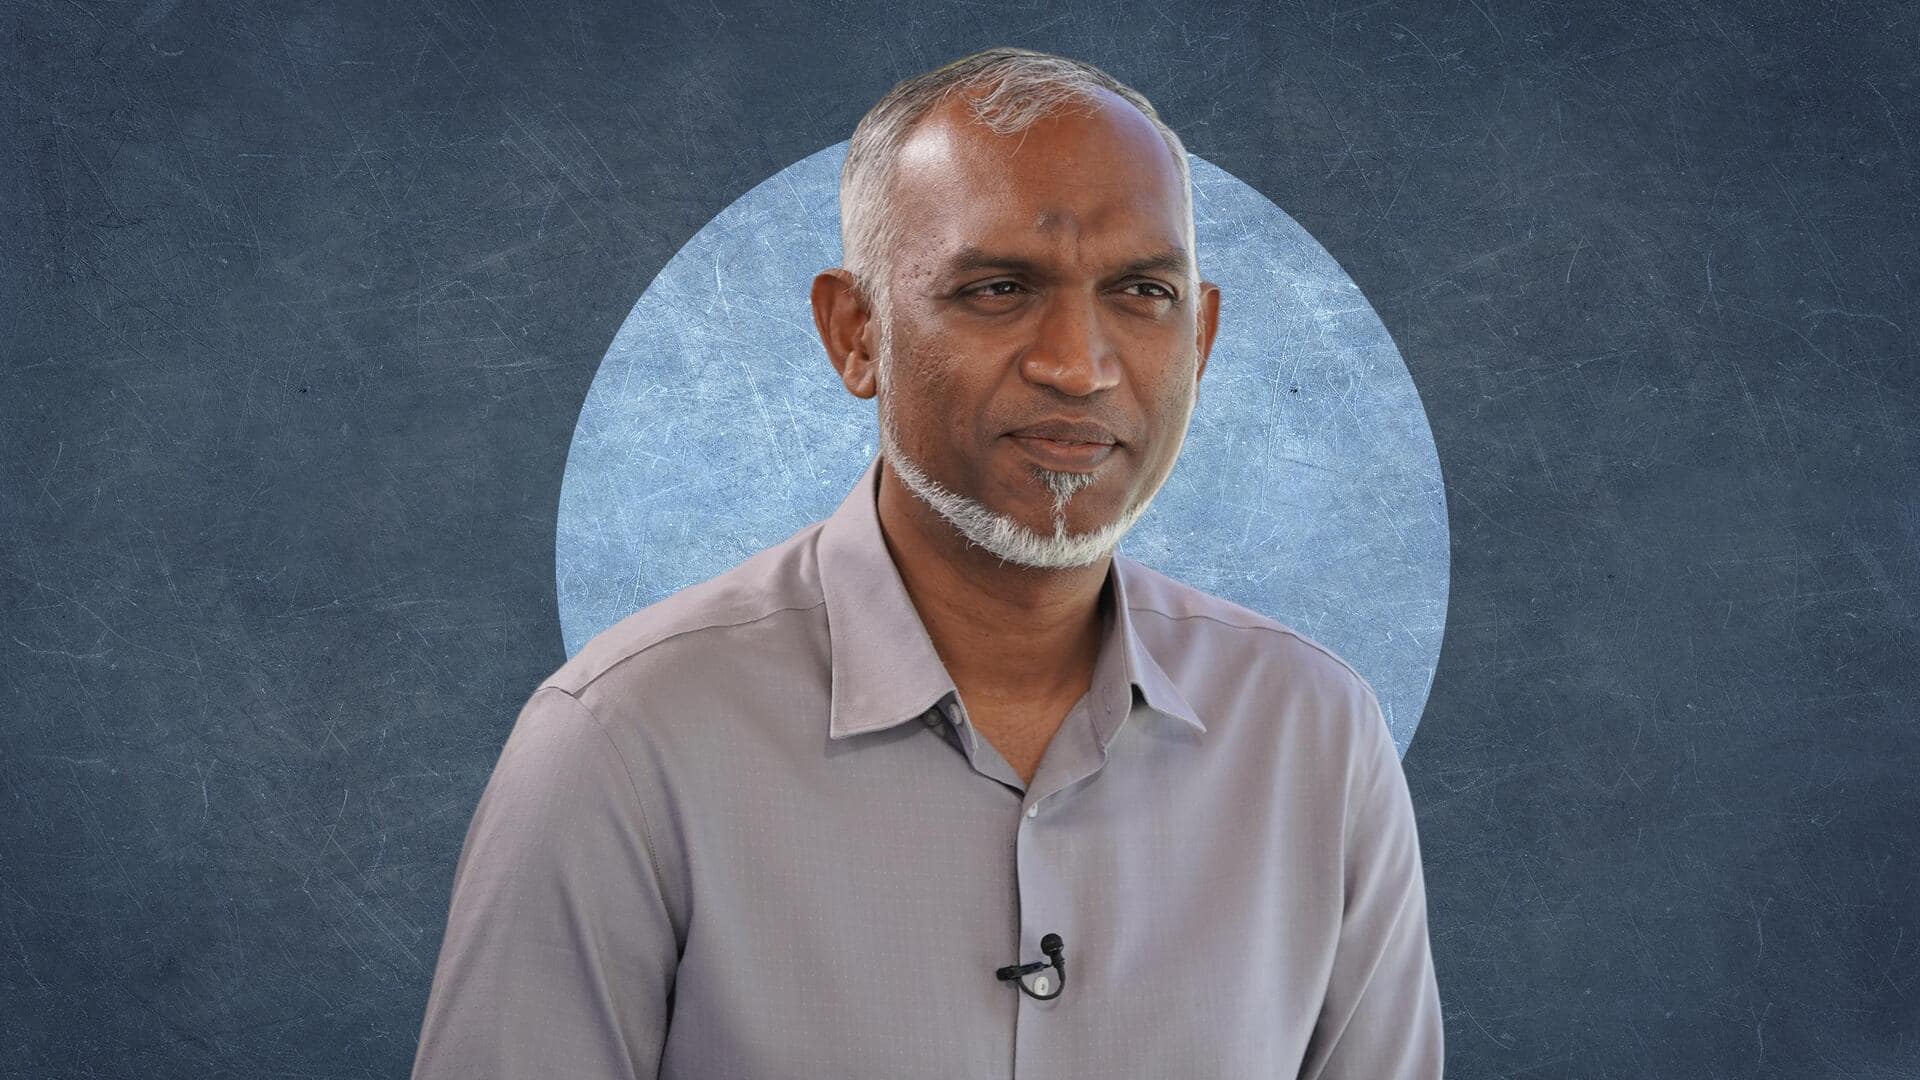 मालदीव के भावी राष्ट्रपति का ऐलान, भारतीय सैनिकों को छोड़ना होगा देश